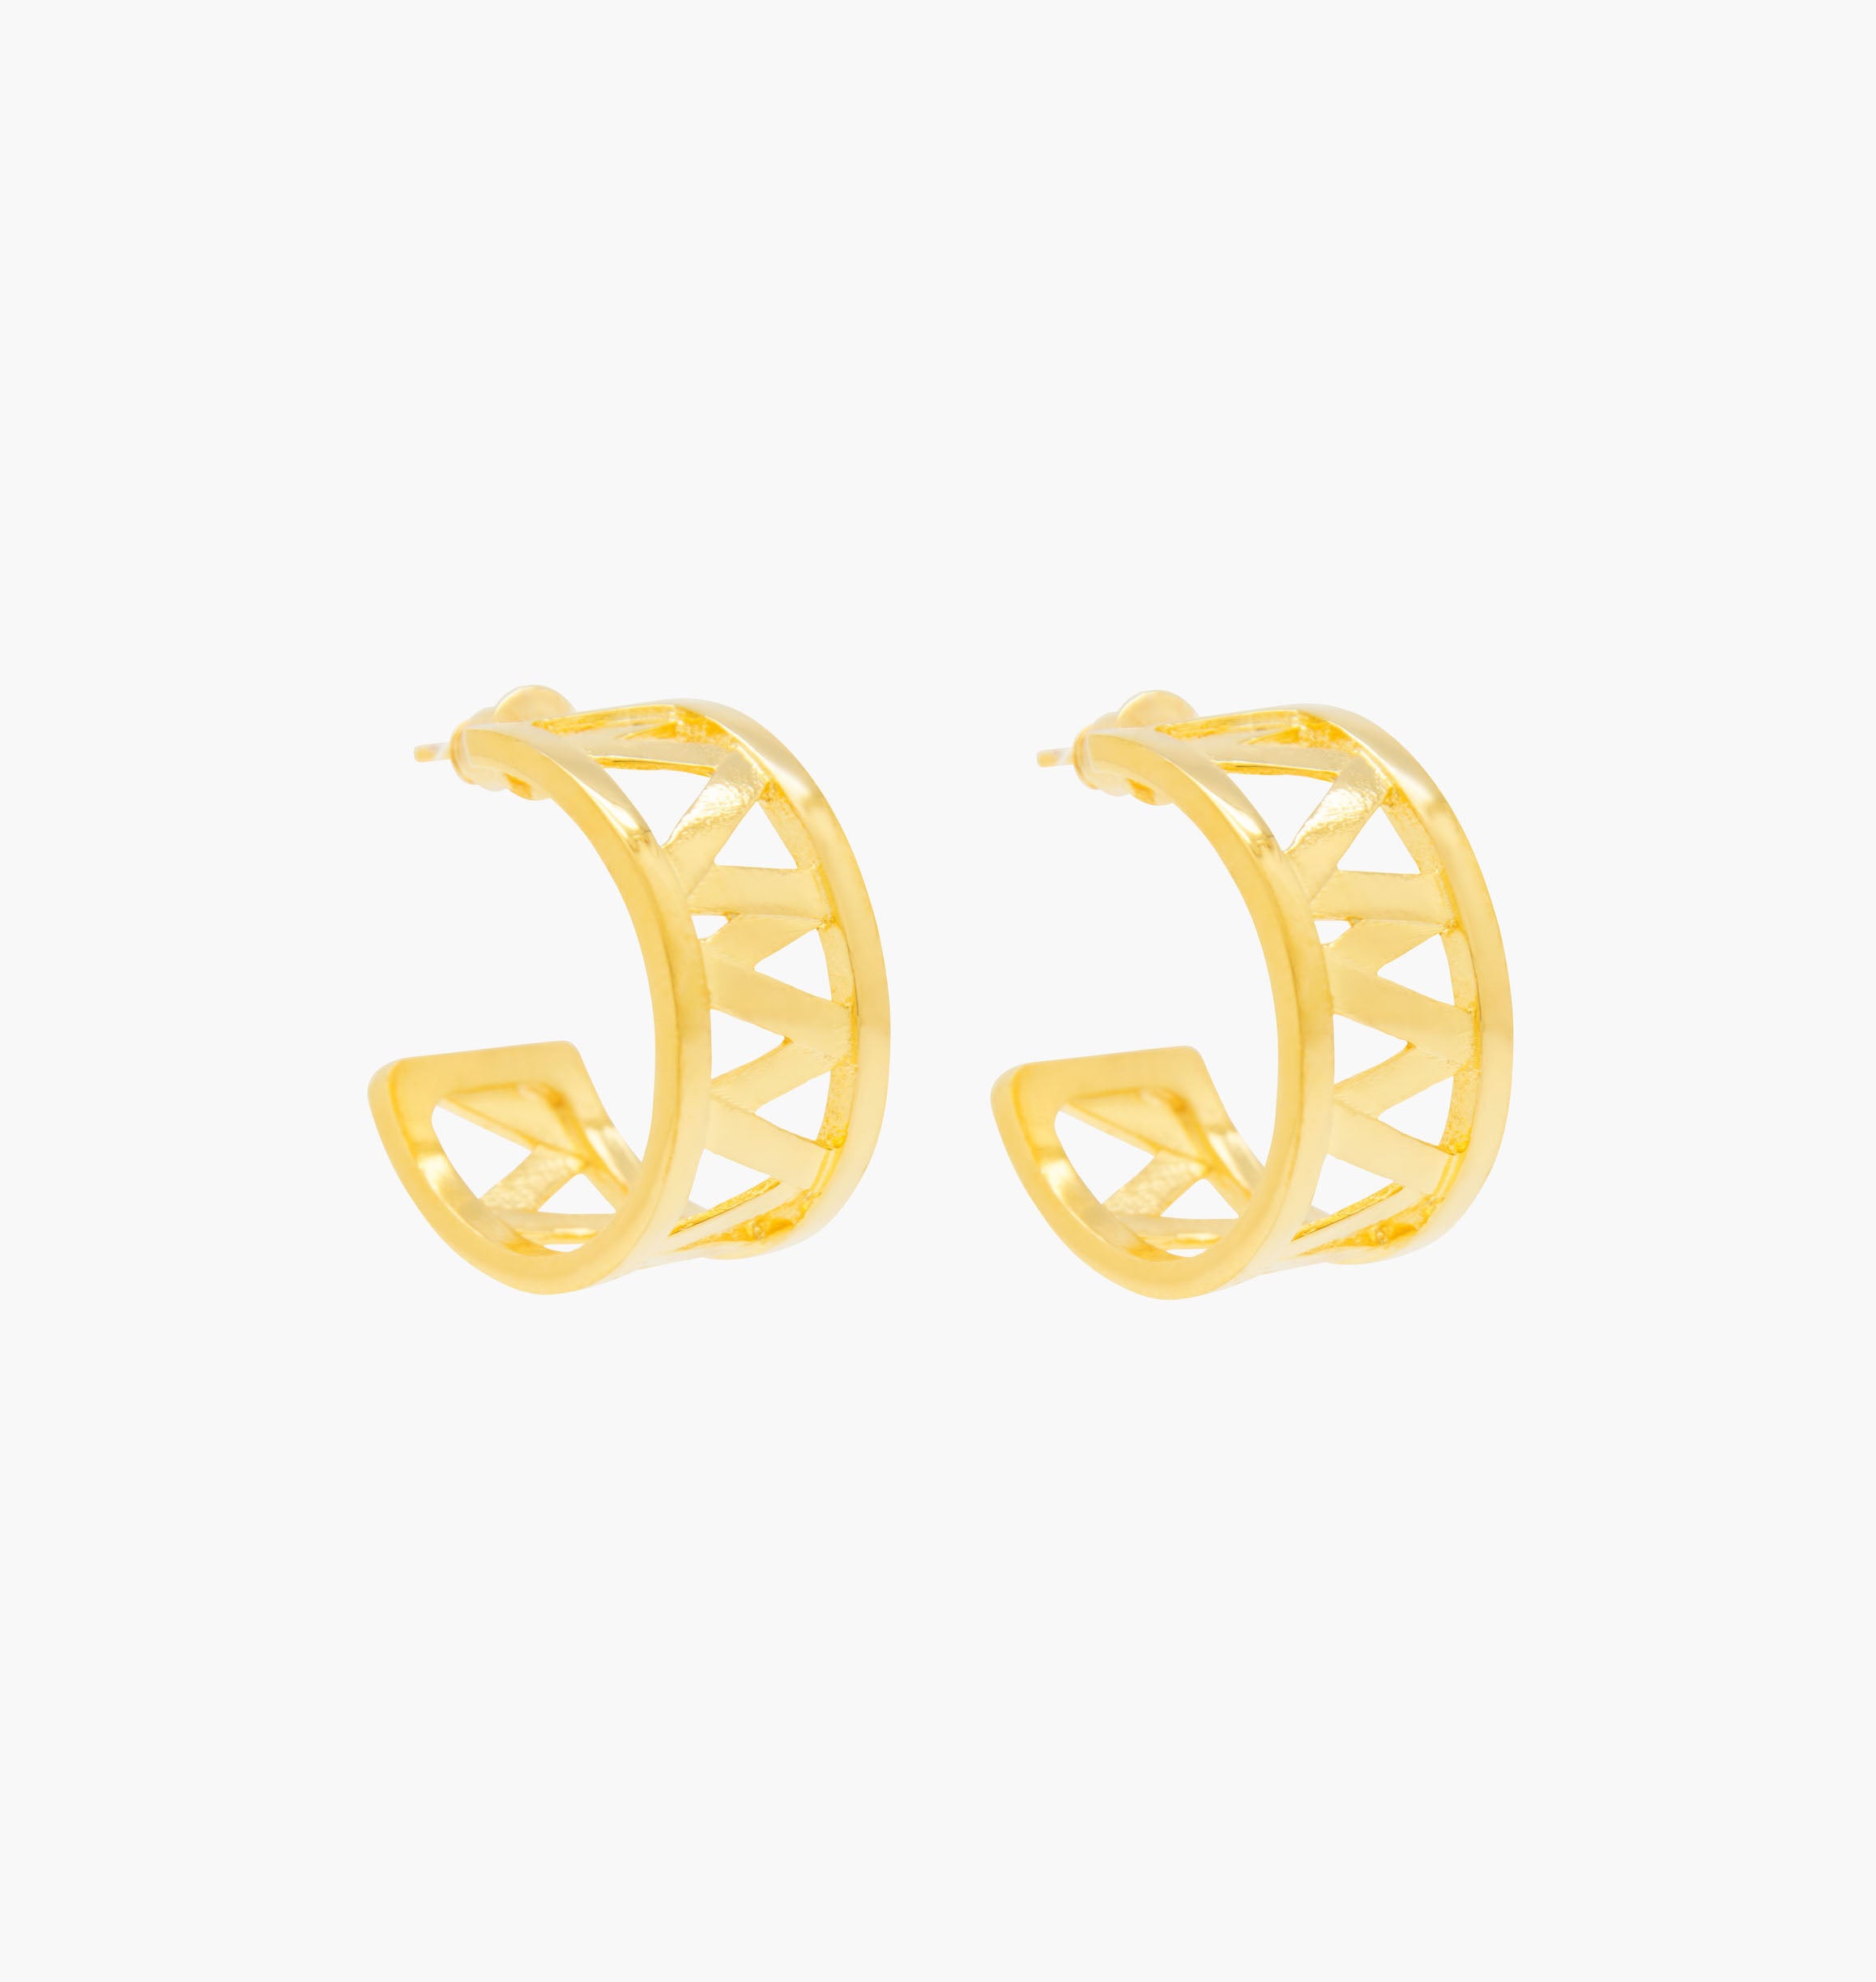 Nos boucles d'oreilles CHARMY sont réalisées en bronze dorées à l'or fin. Elegantes et minimales, elles perfectionneront votre style avec une touche de modernité et seront assez discrètes pour être associées à vos tenues du quotidien , bijoux doré or, bijoux créateurs fabriqué made in Belgium , boucle d'oreille originale, boucle d'oreille  or doré,